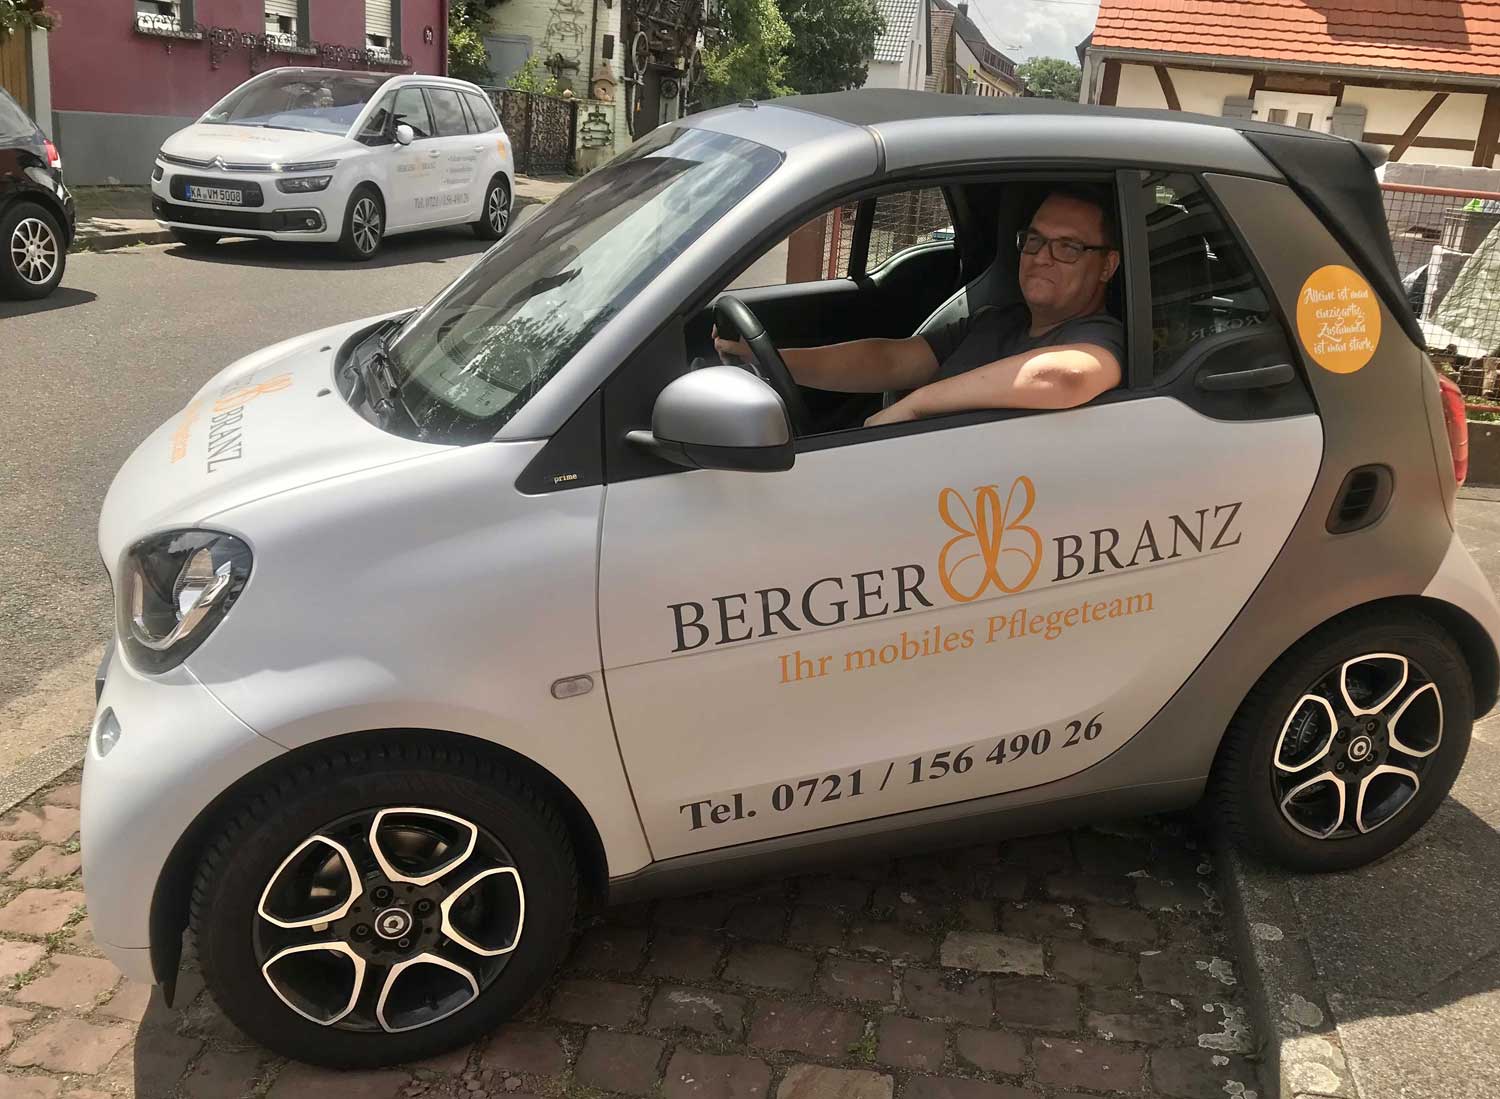 Bild 3 Berger & Branz Ihr mobiles Pflegeteam in Karlsruhe